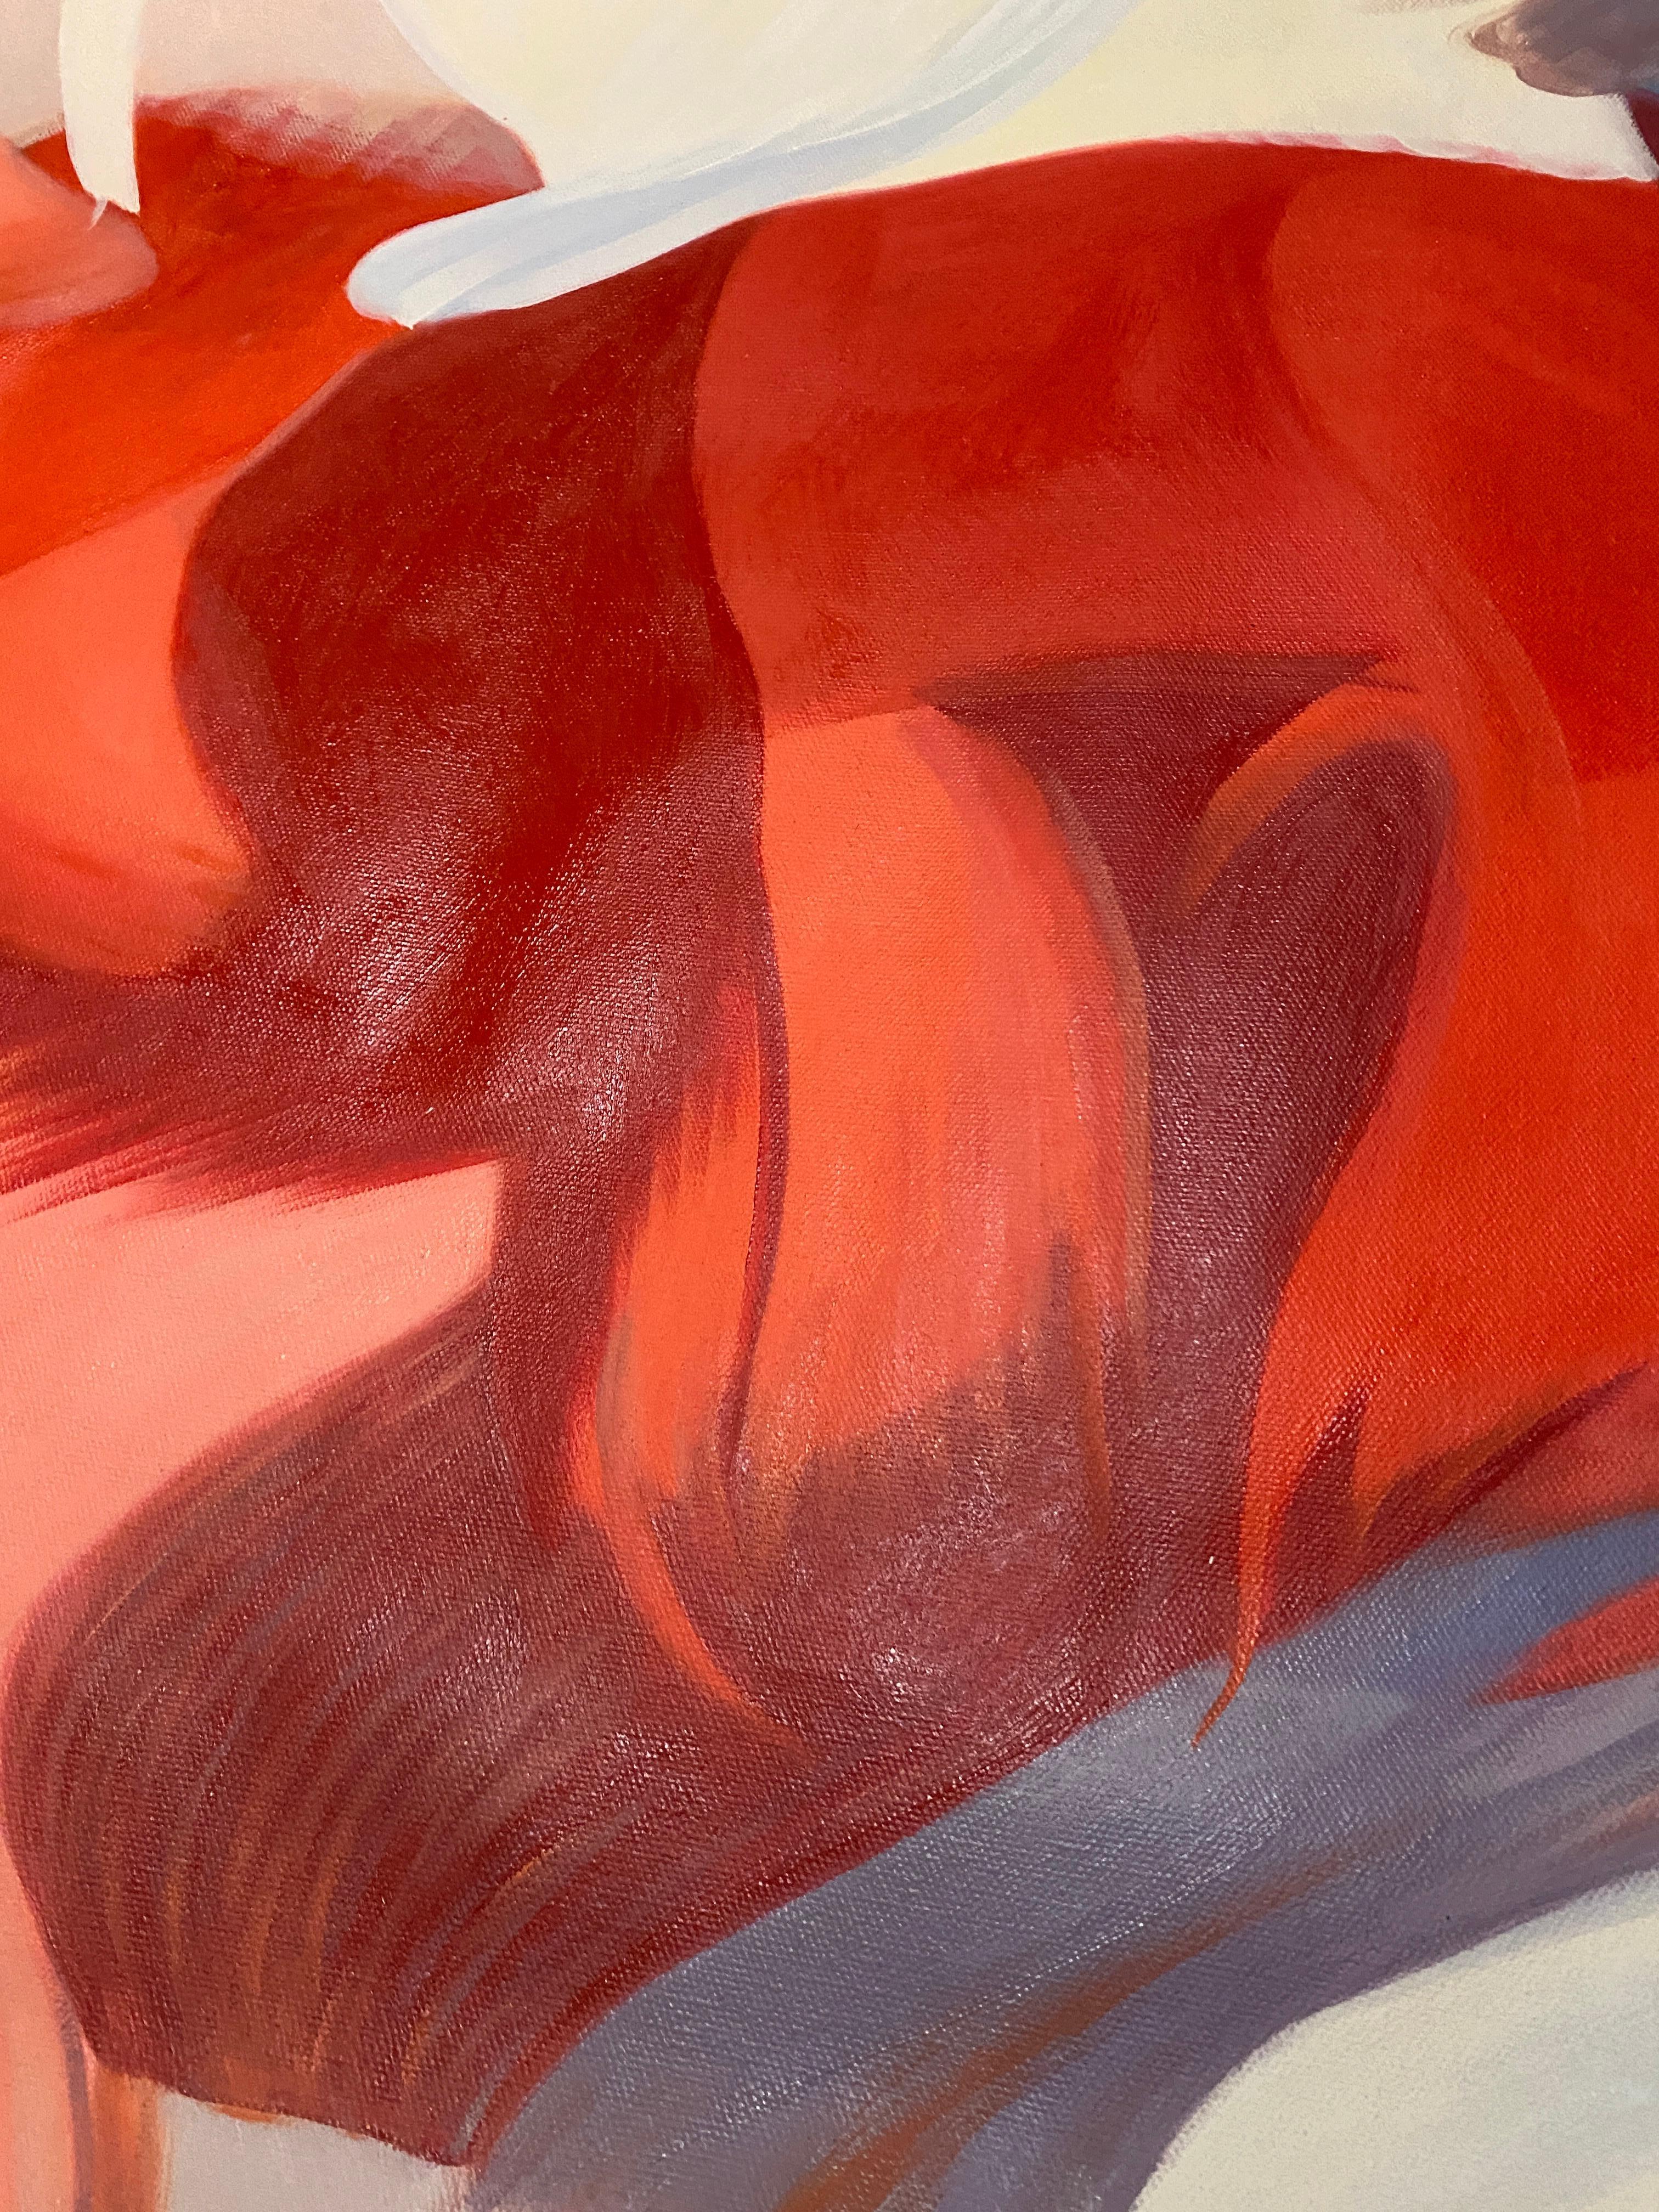 Peinture abstraite sur toile bleu-rouge 55x78